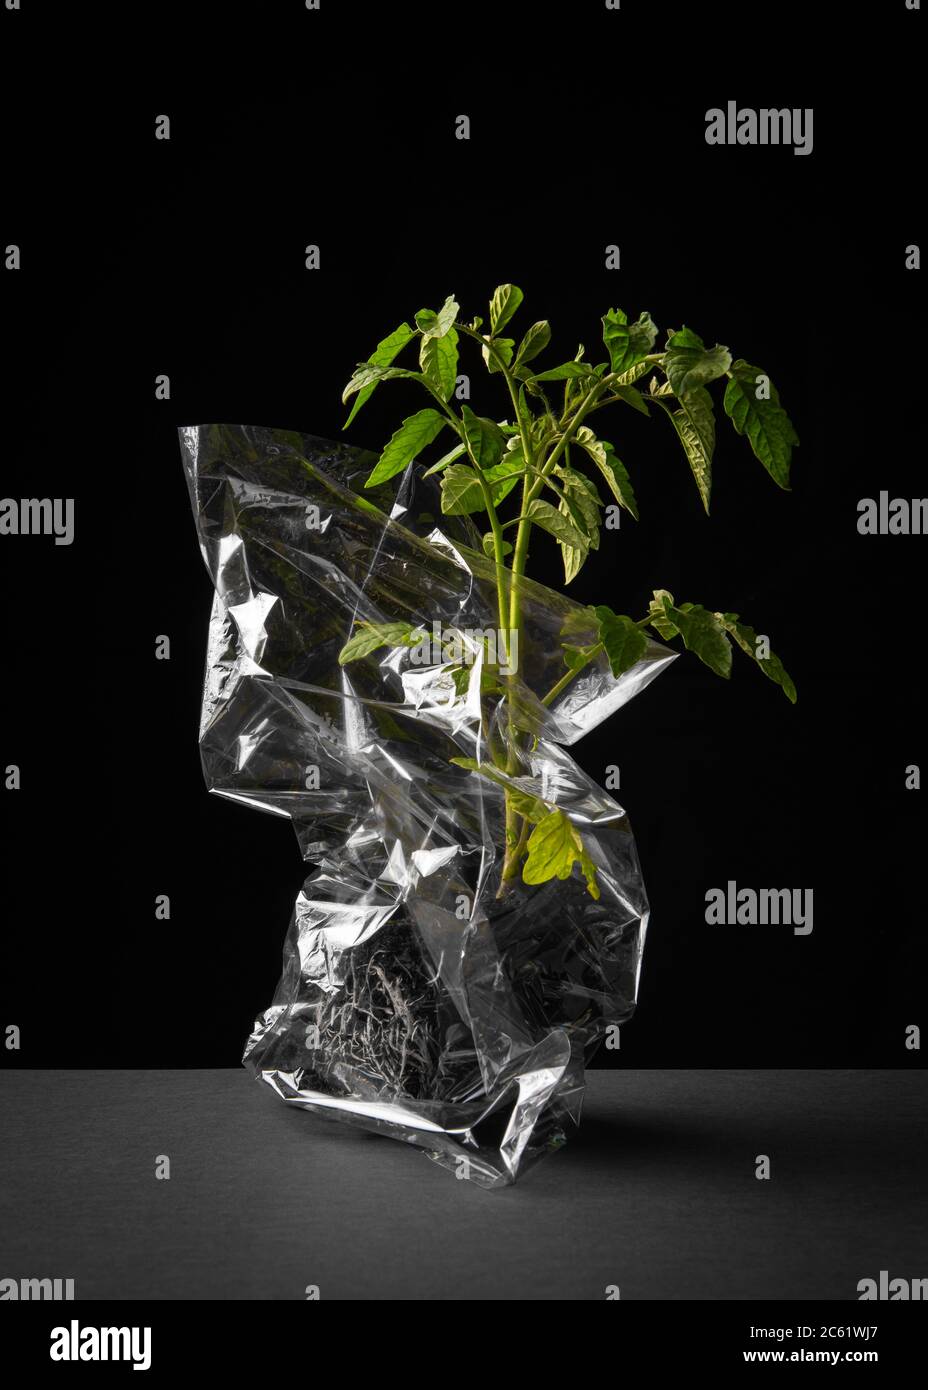 Tomato plant in a plastic bag Stock Photo